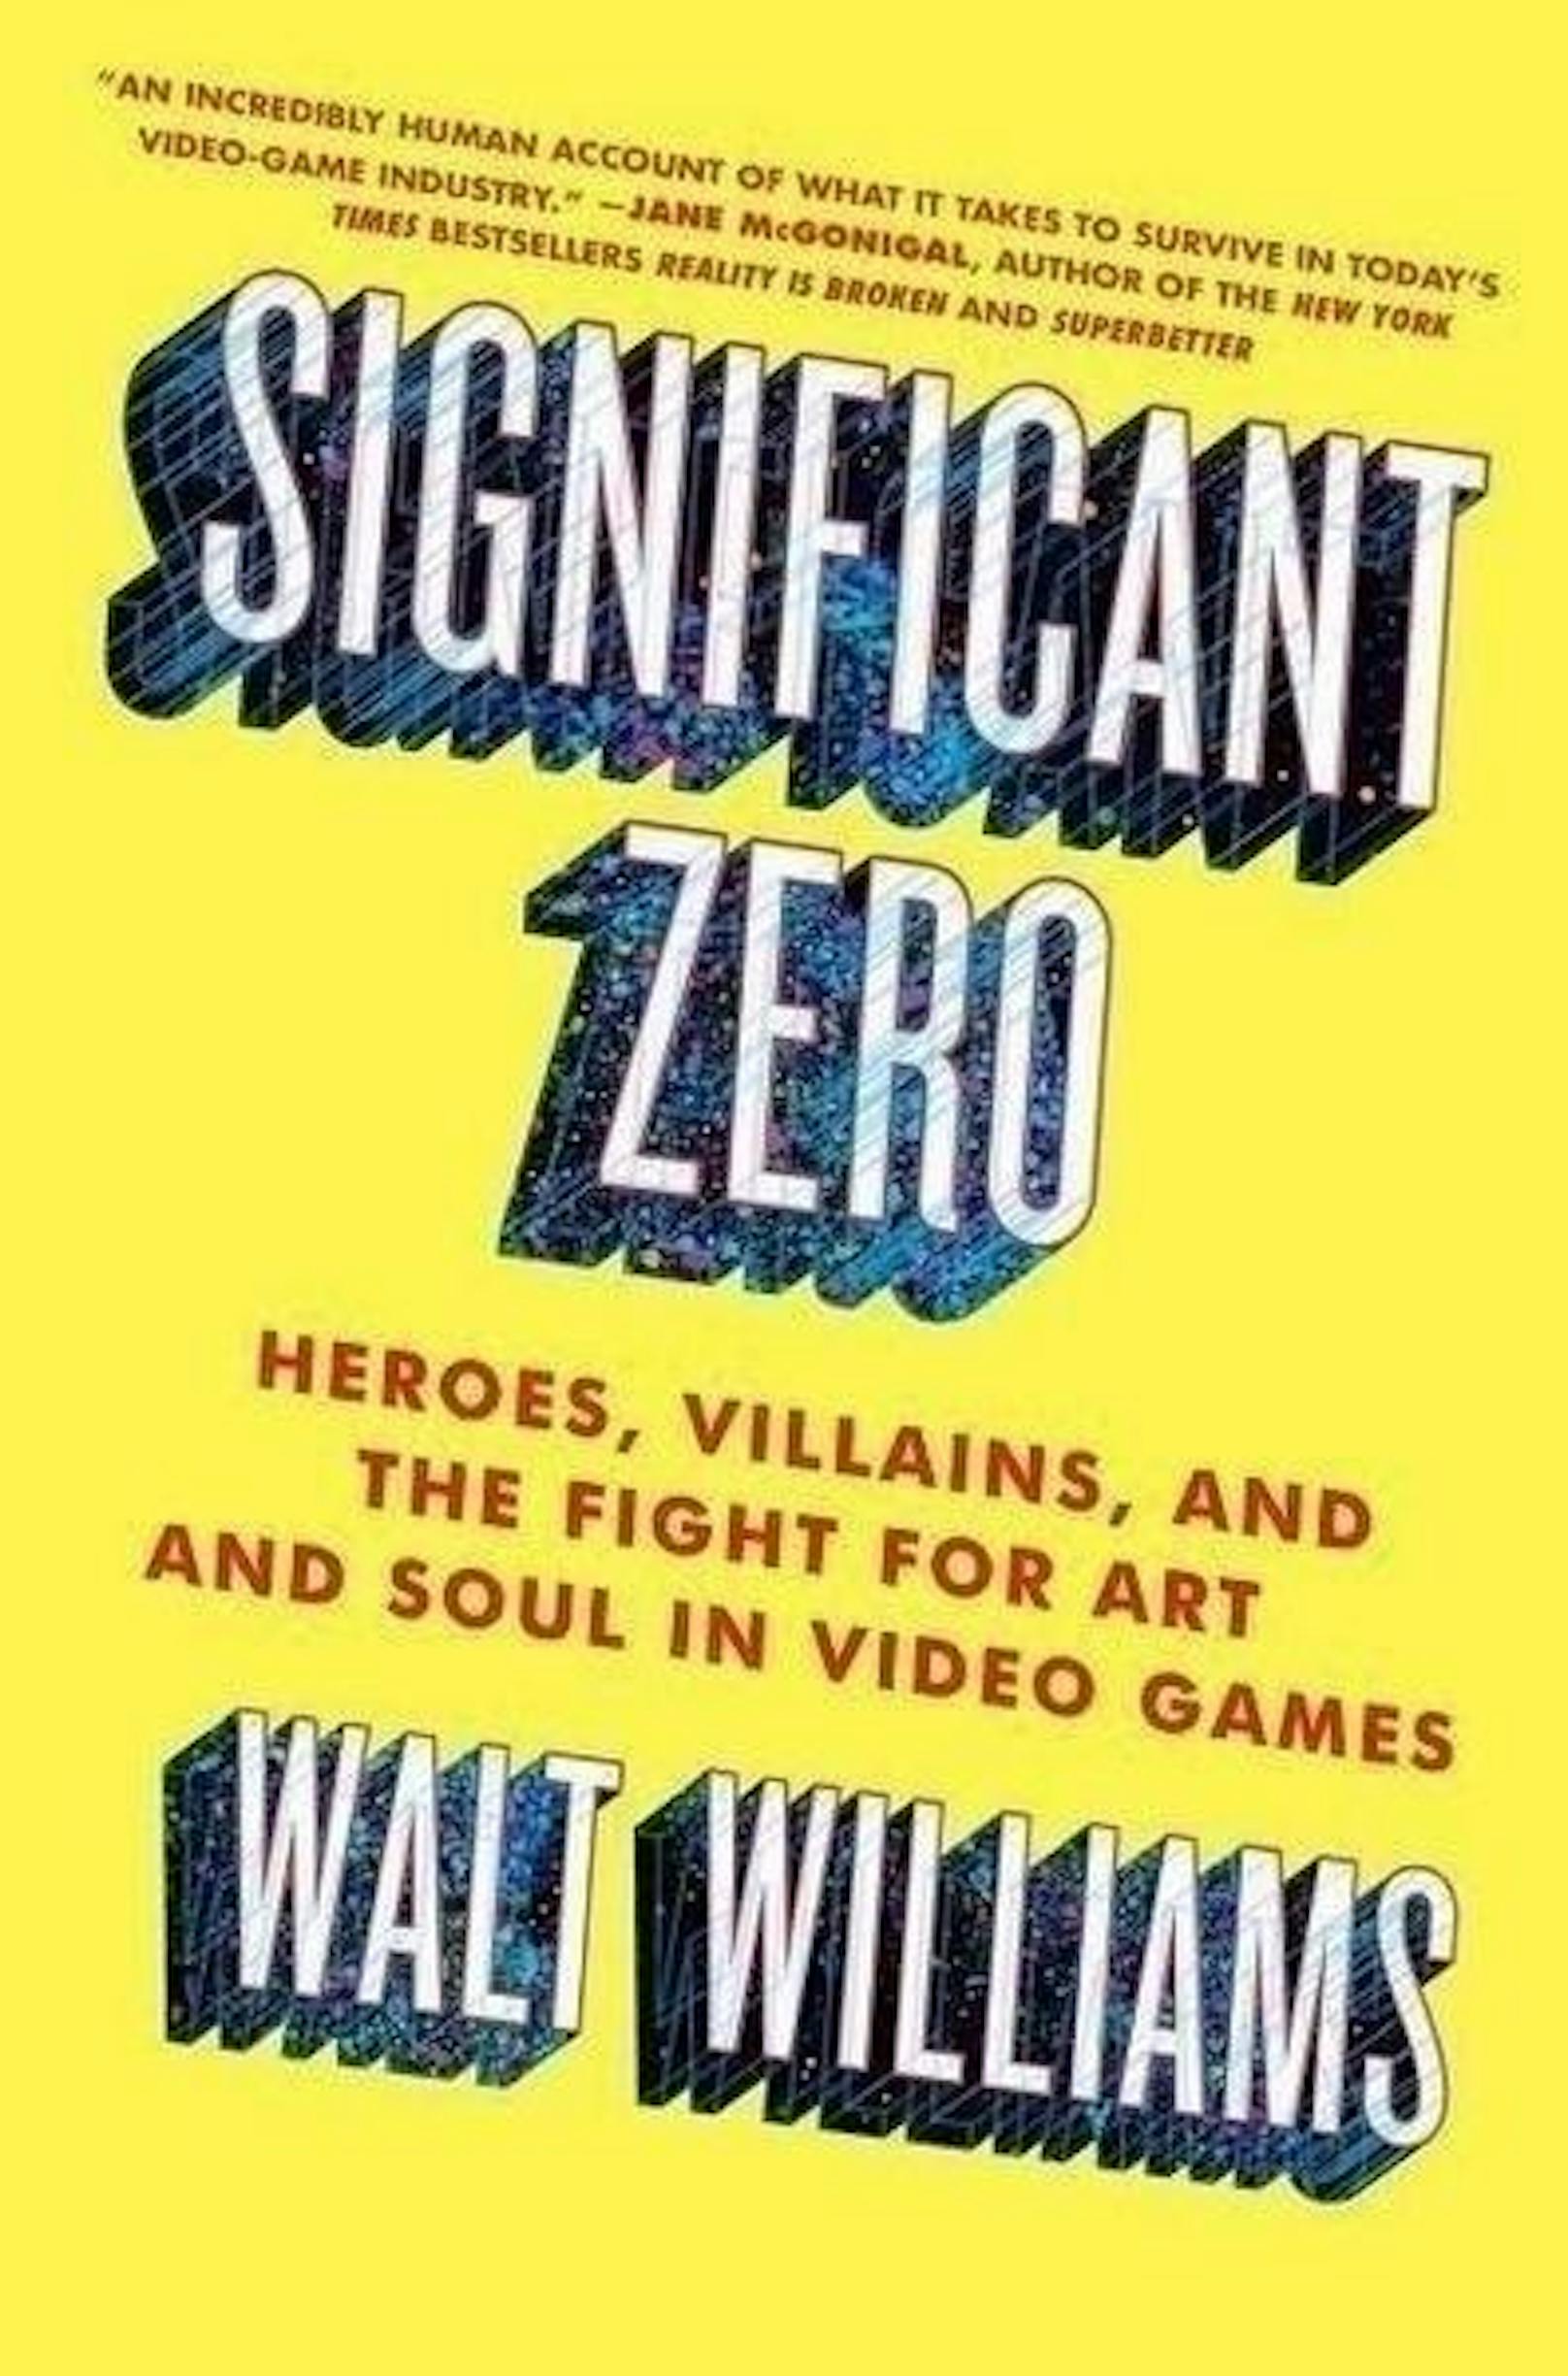 Ein Buch darüber, wie der Alltag einiger der größten Videospielunternehmen der Welt aussieht. Der Autor arbeitete selber als Storyentwickler für Titel wie "BioShock" oder "Civilization". Trotz seiner eigenen Karriere in der Branche schreckt er nicht davor zurück, auch Kritik an Kollegen in der Videospielindustrie zu üben und deren Hang zu Gewalt zu thematisieren.
<b>Walt Williams: "Significant Zero", Simon + Schuster, 304 Seiten, Englisch, 6,55 Euro</b>